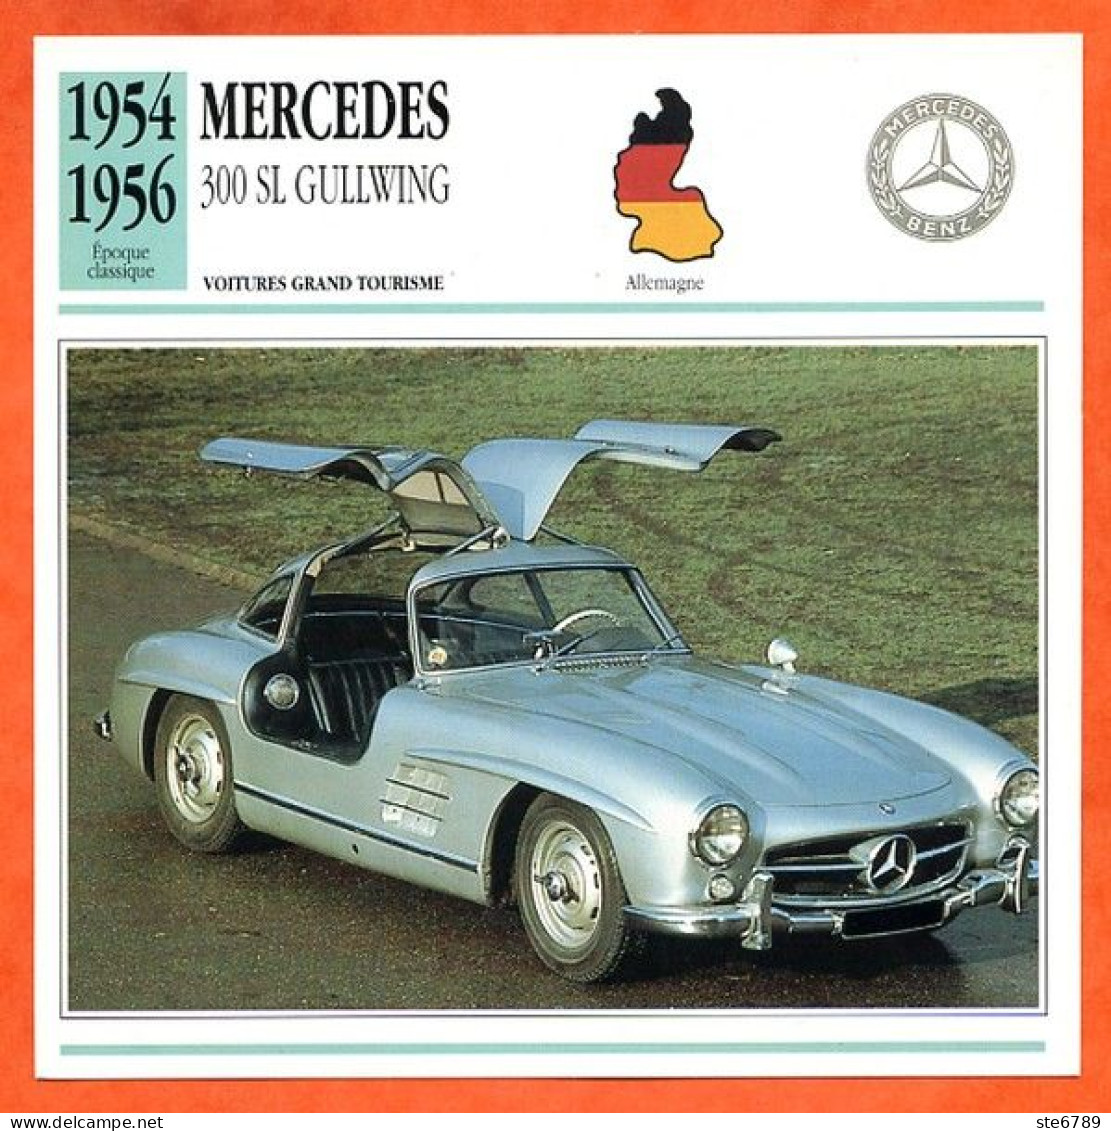 MERCEDES 300 SL GULLWING 1954 Voiture Grand Tourisme Allemagne Fiche Technique Automobile - Voitures